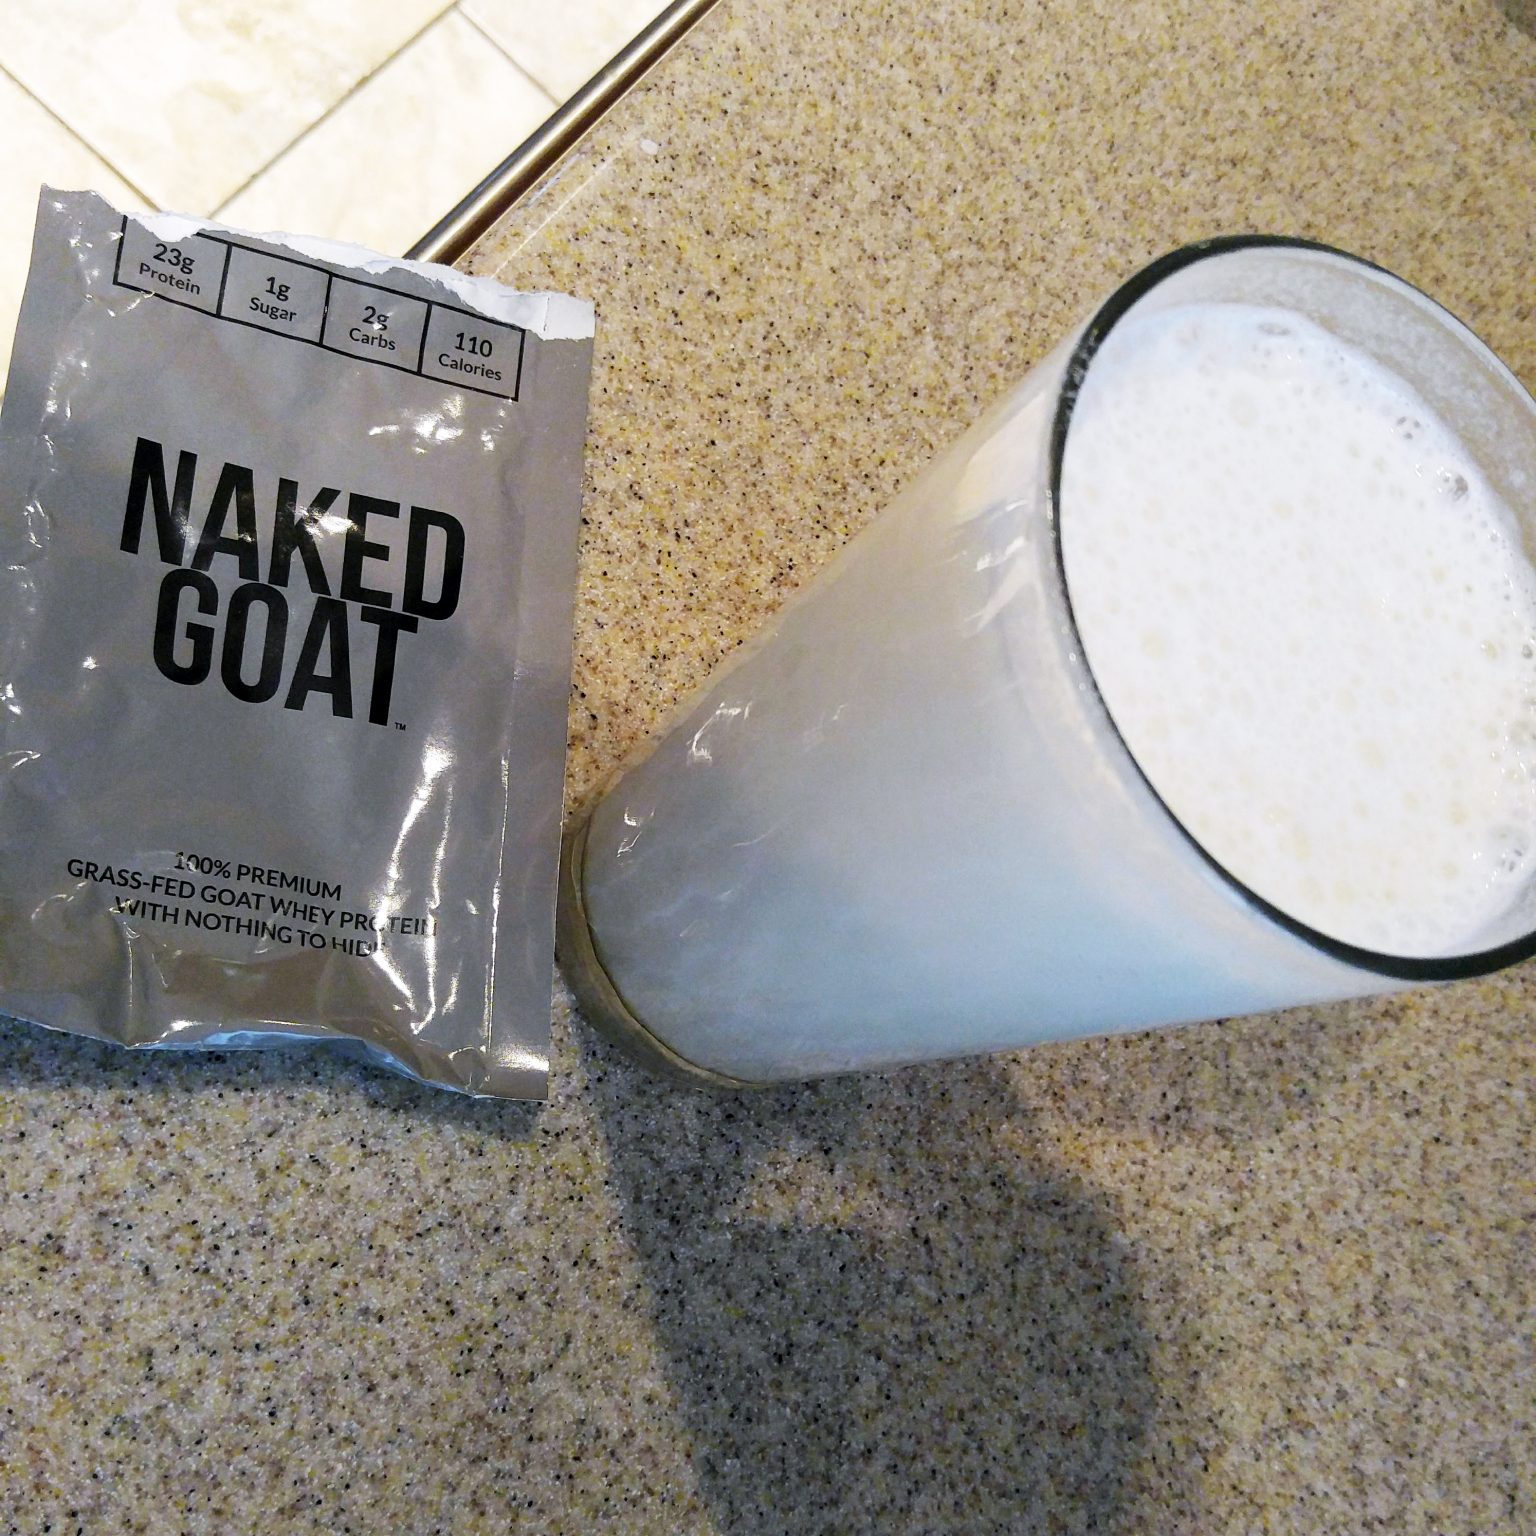 Day 4 - Naked Goat